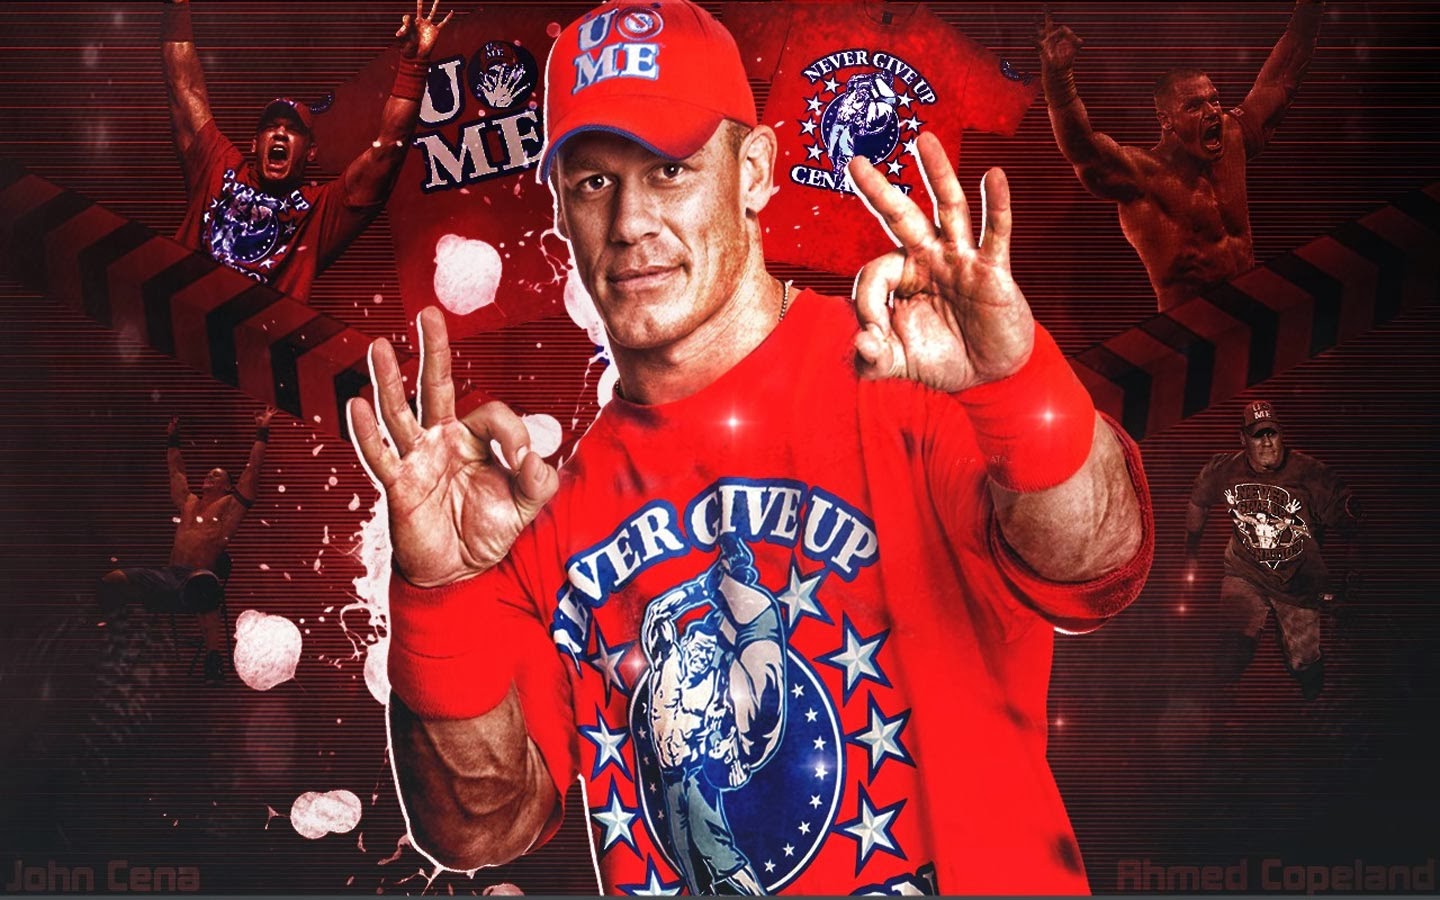 Wallpapers: John Cena Yellow Shirt John cena never give up rally ...